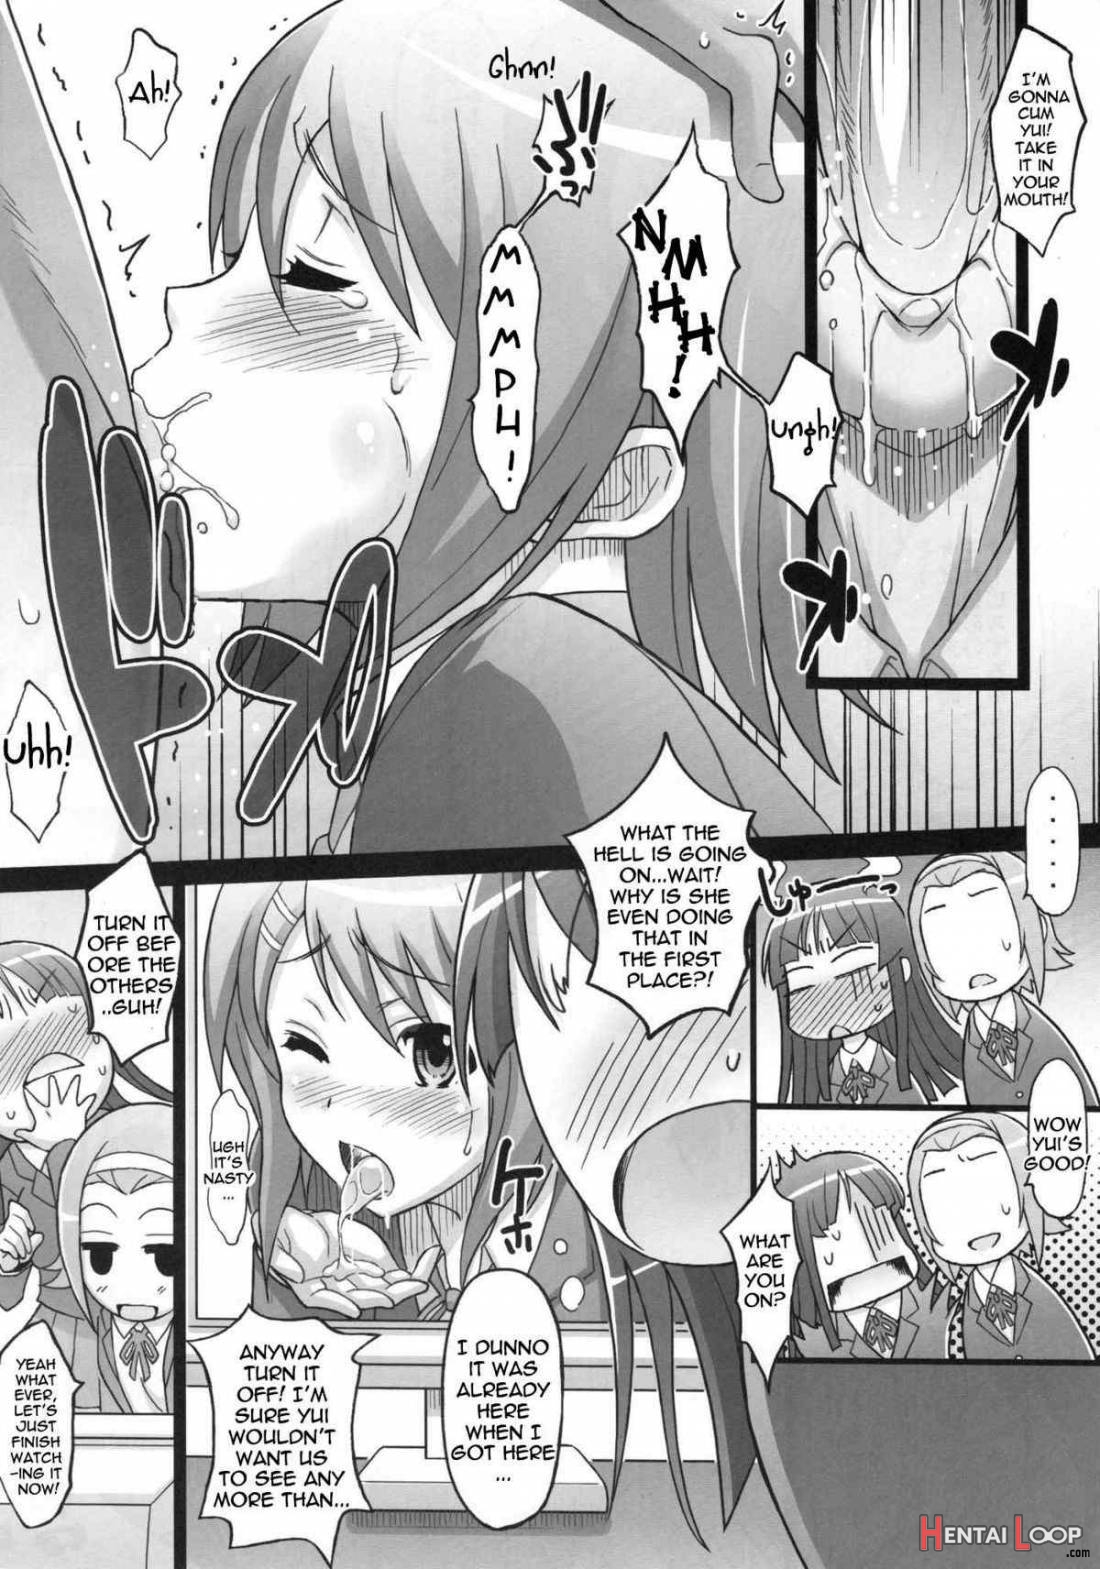 Ritsu x Mio page 5